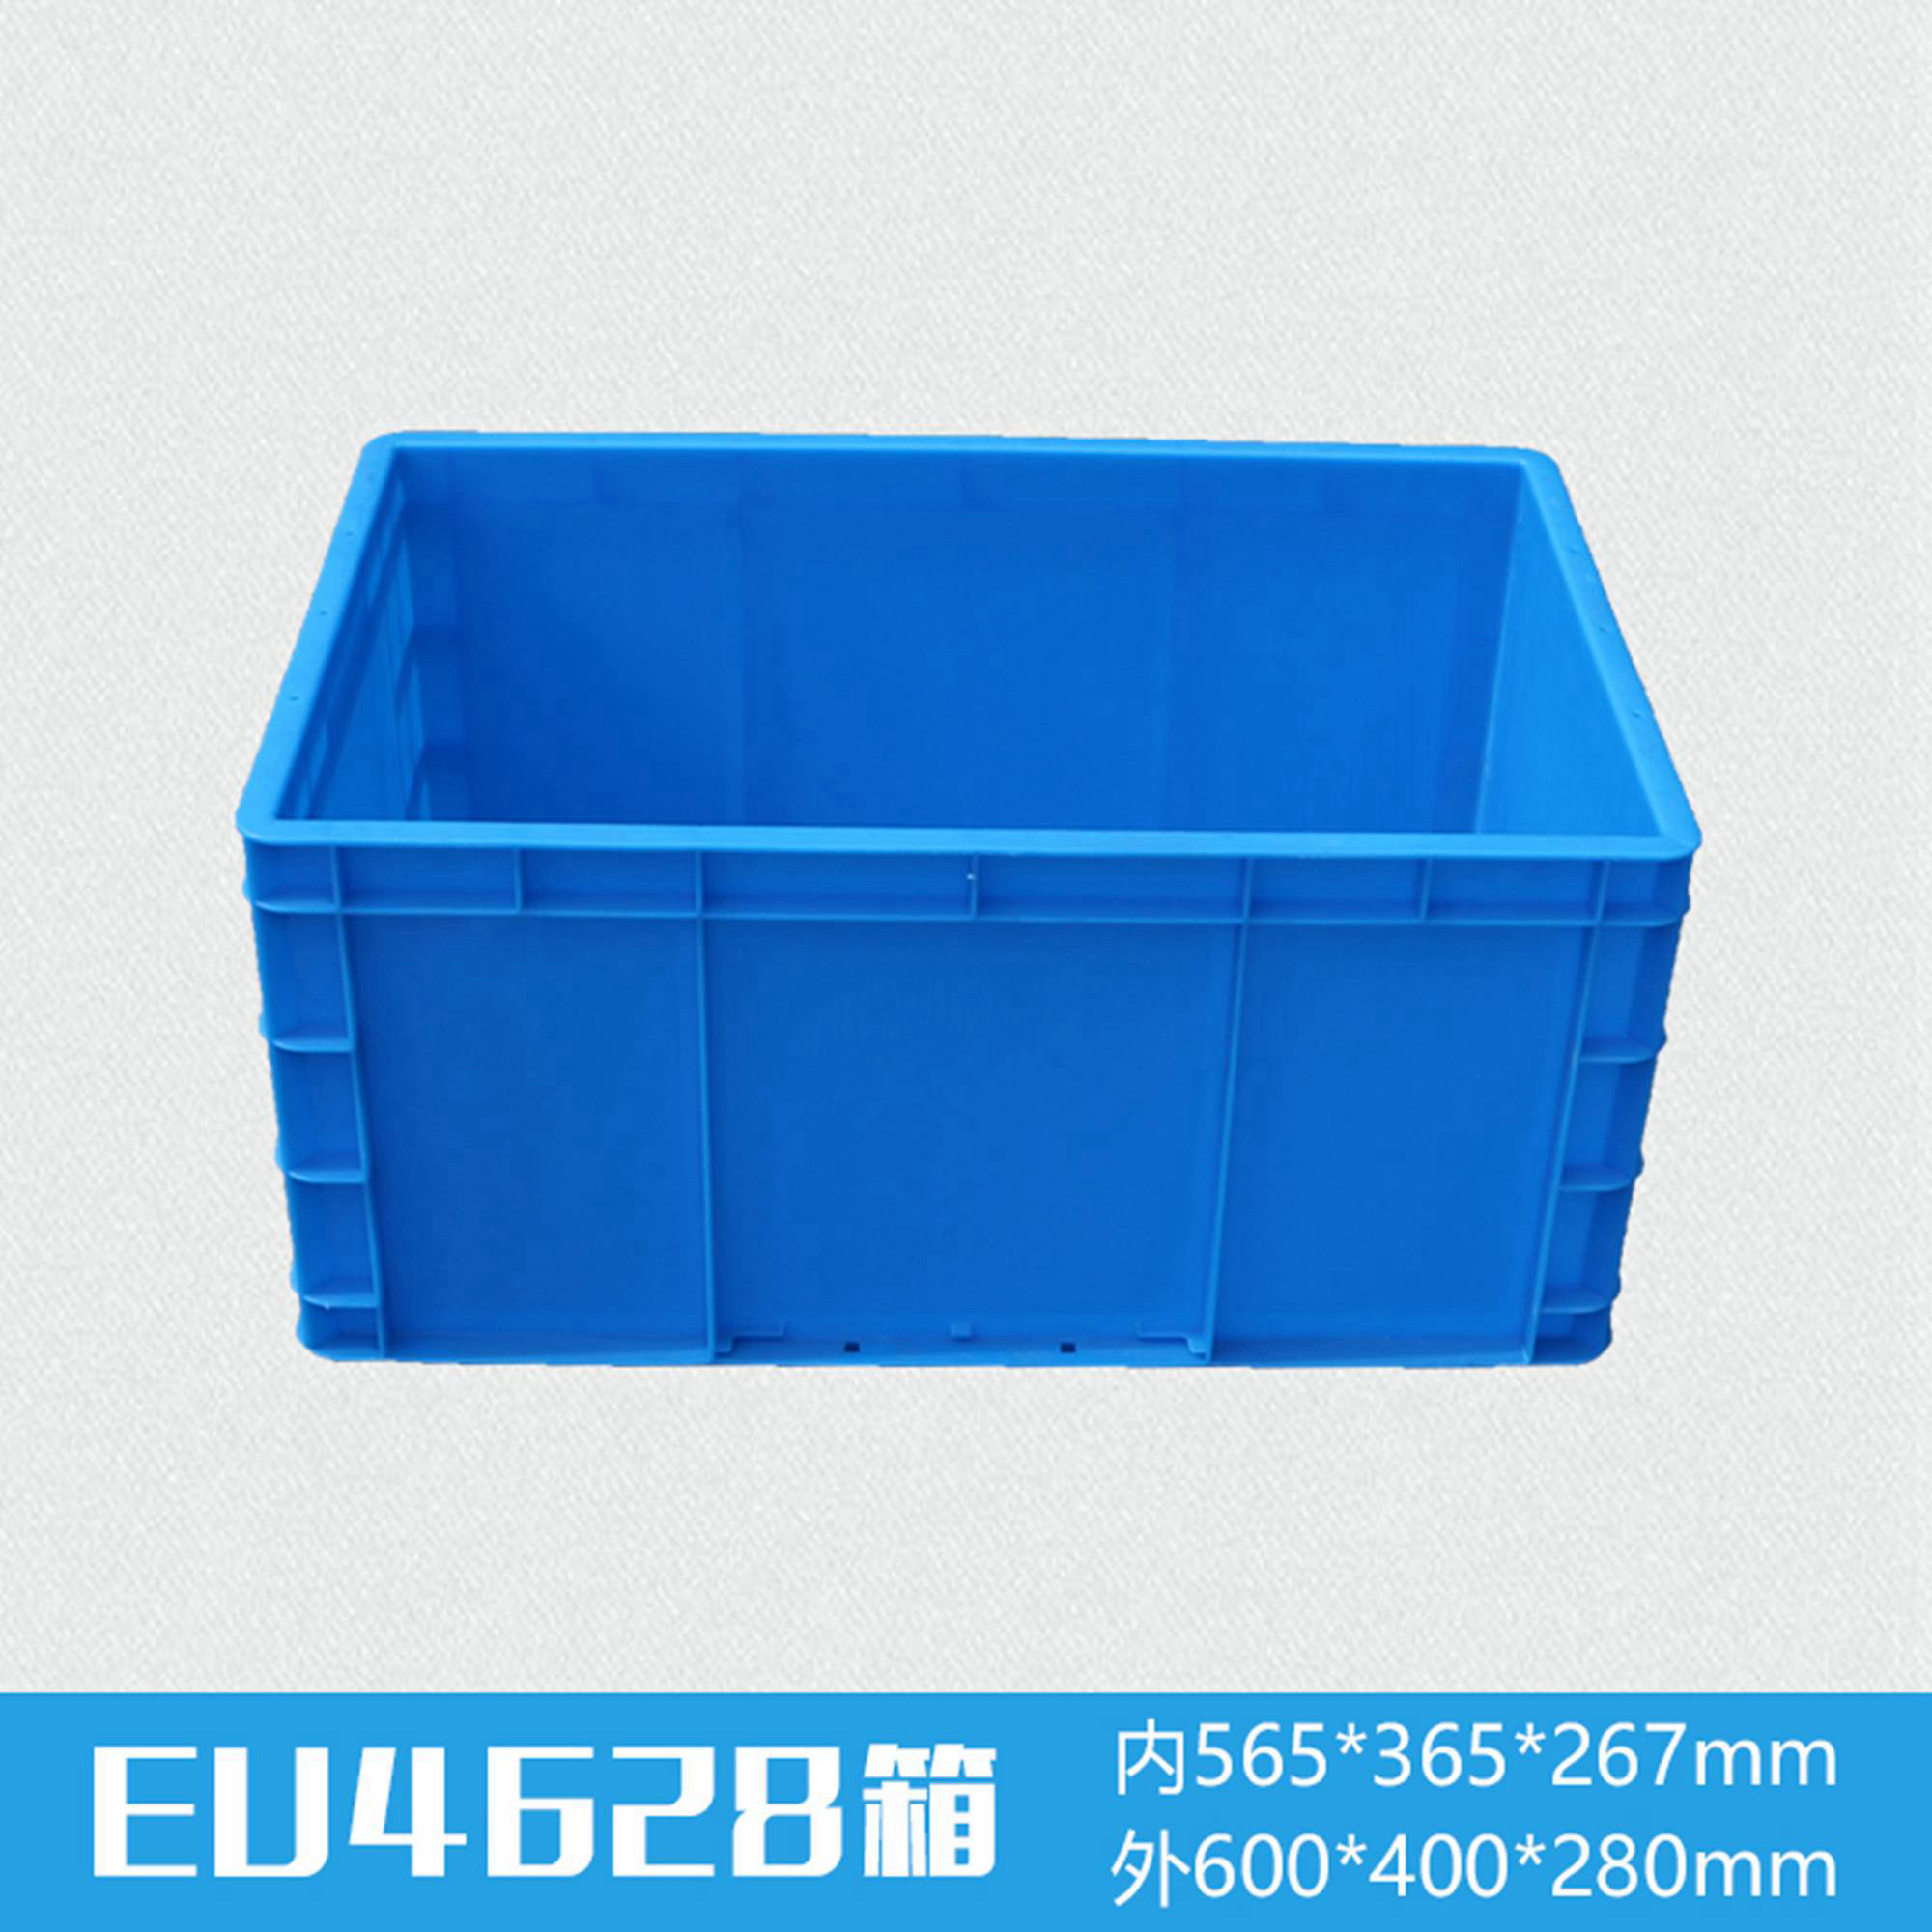 轩盛塑业EU4628塑料物流箱